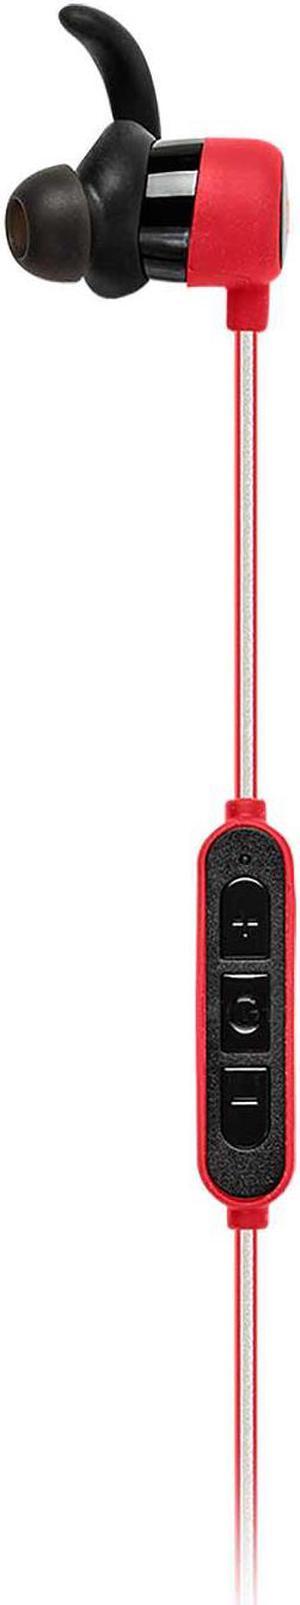 JBL Refect Mini BT InEar Bluetooth Sport Headphones Red